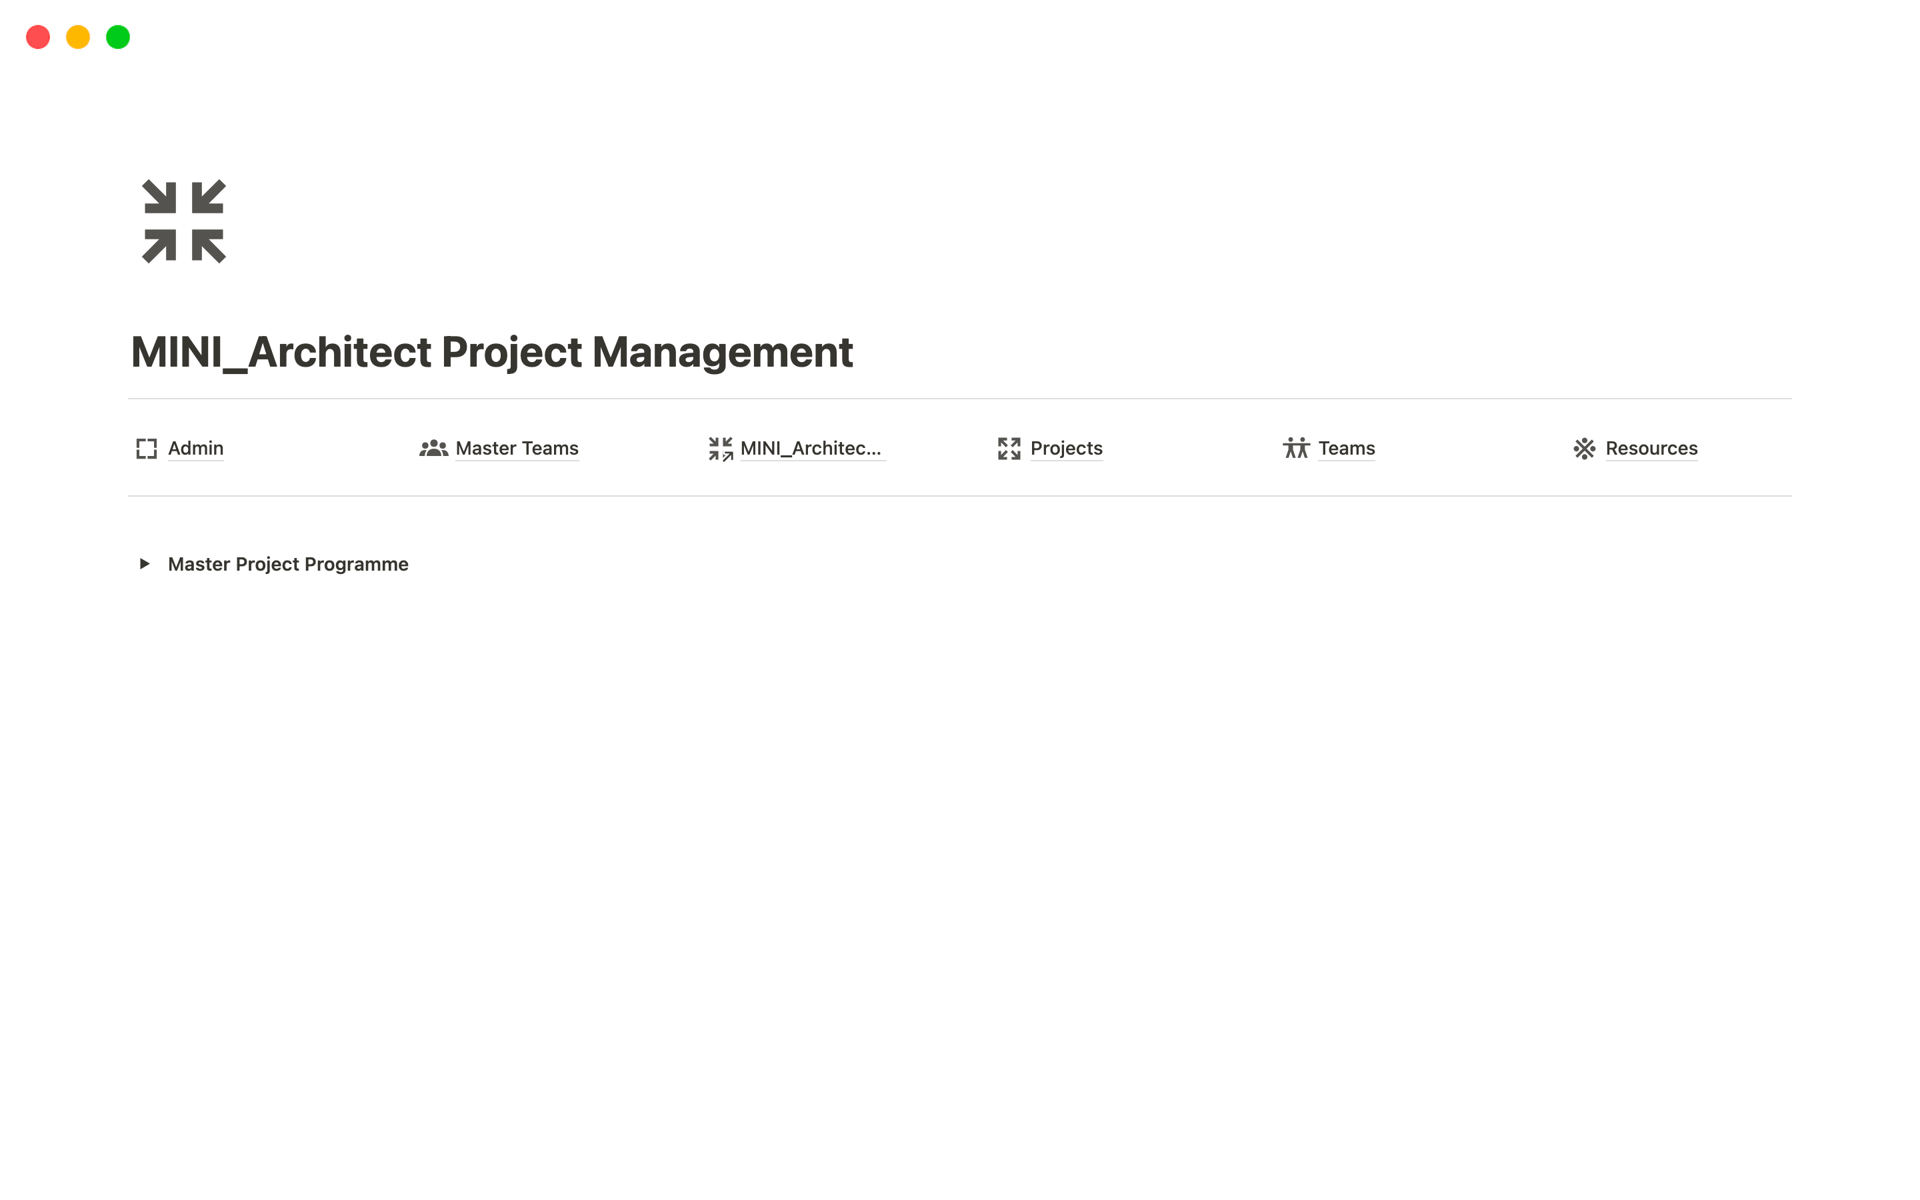 Vista previa de plantilla para MINI_Architect Project Management